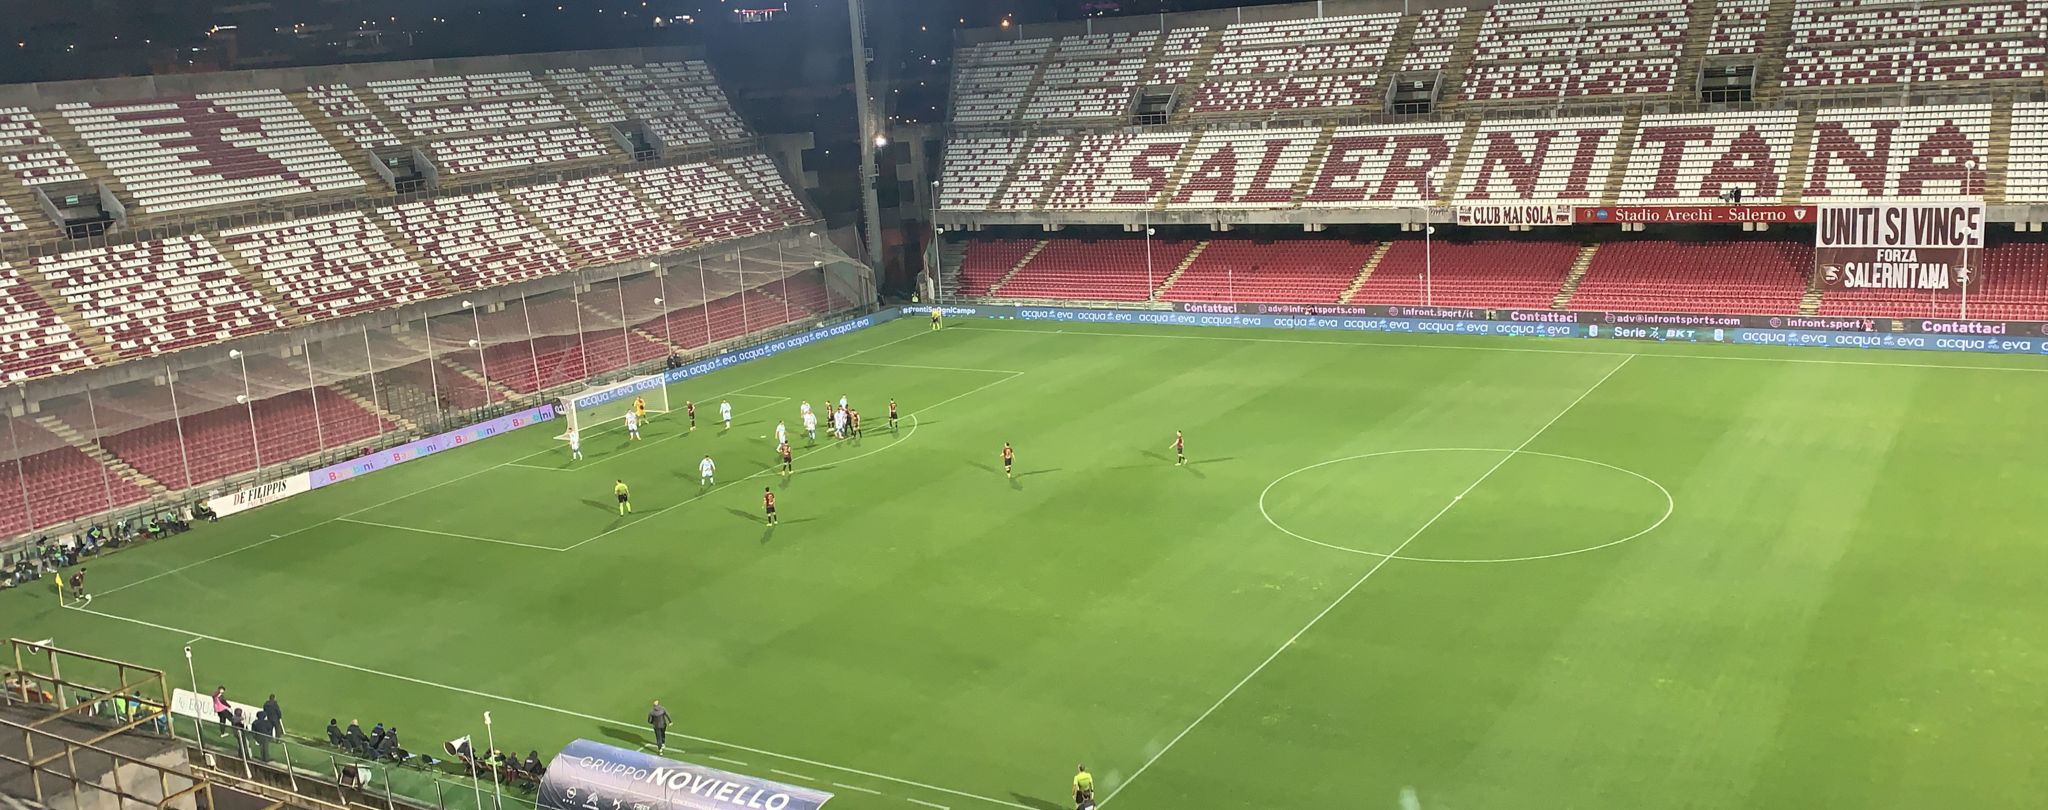 Salernitana – Frosinone: Cicerelli regala il gol vittoria ed il terzo posto